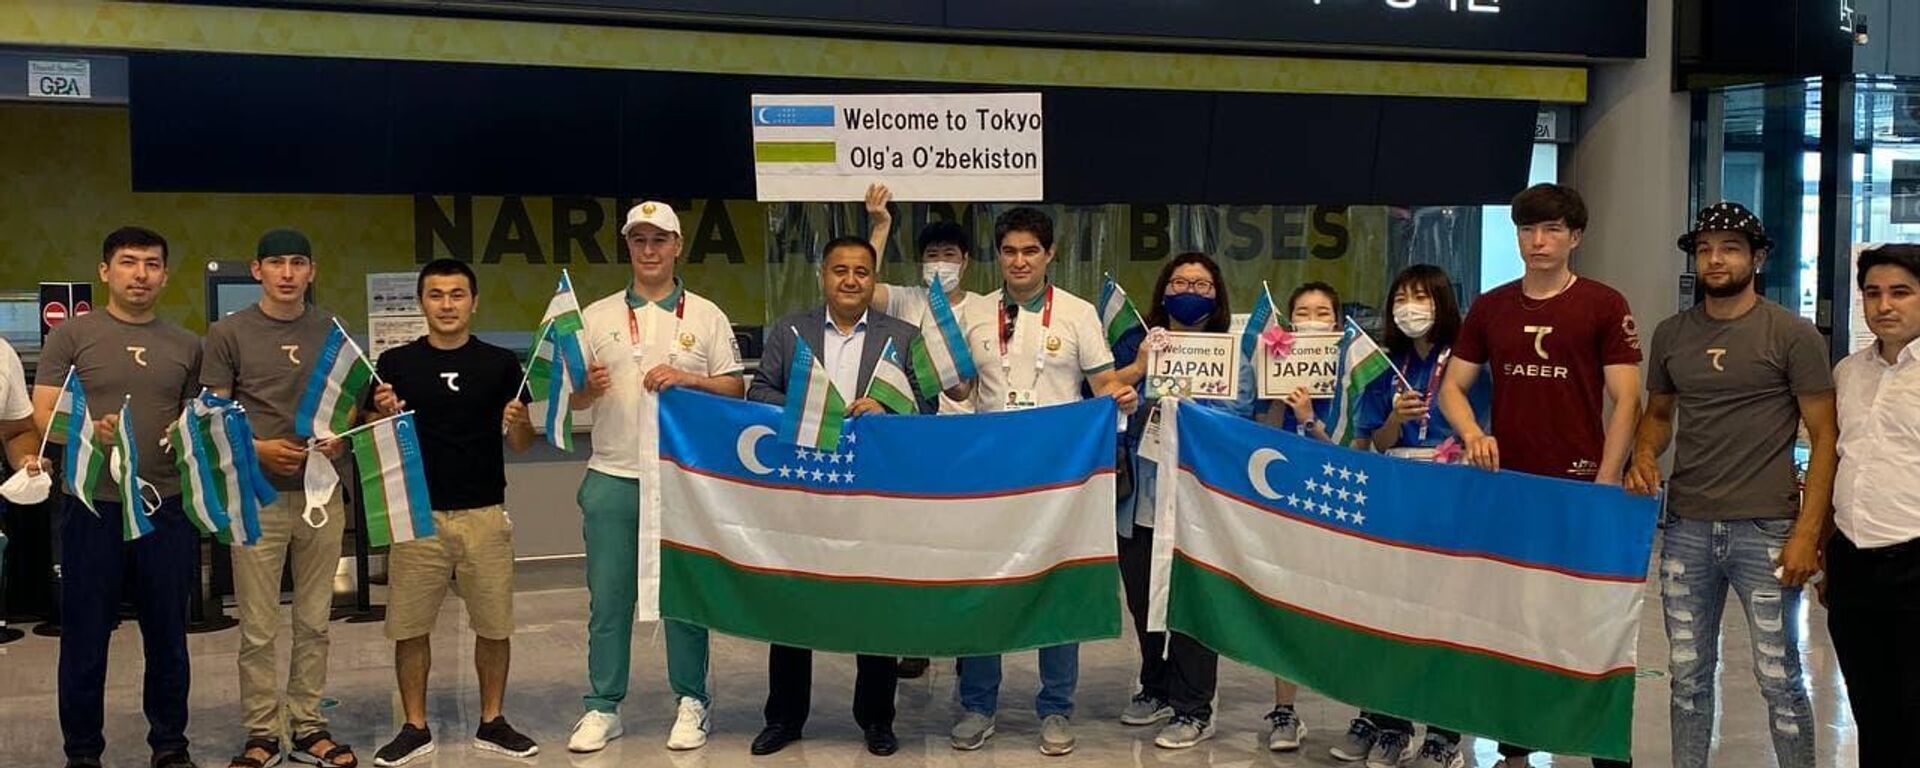 Делегация Узбекистана прибыла в Токио, чтобы принять участие в XXXII летних Олимпийских играх - Sputnik Узбекистан, 1920, 20.07.2021